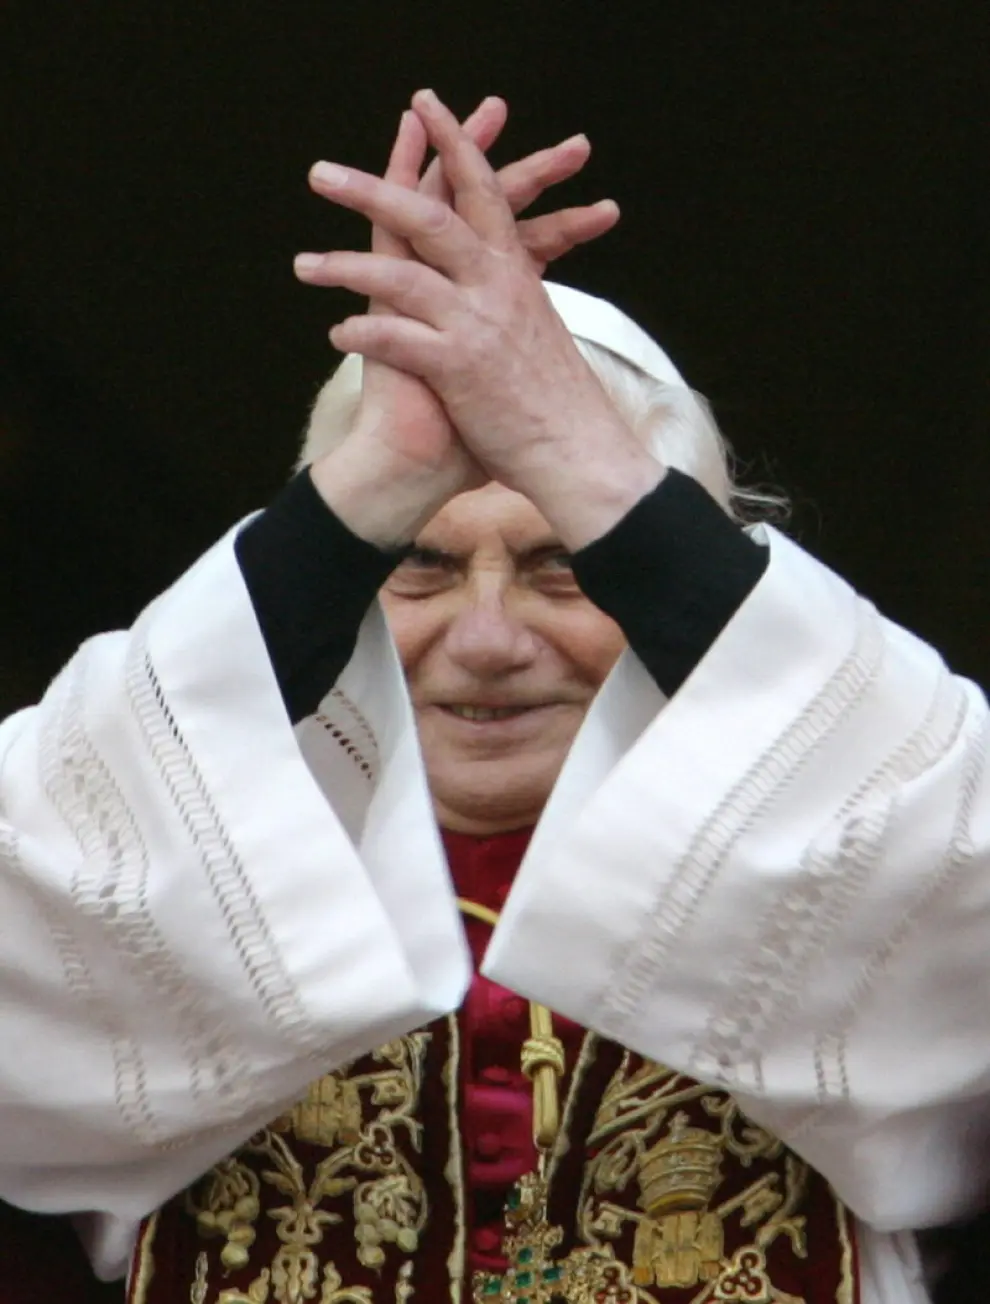 El Papa abandonará el pontificado el 28 de febrero próximo, según ha comunciado el propio Pontífice .